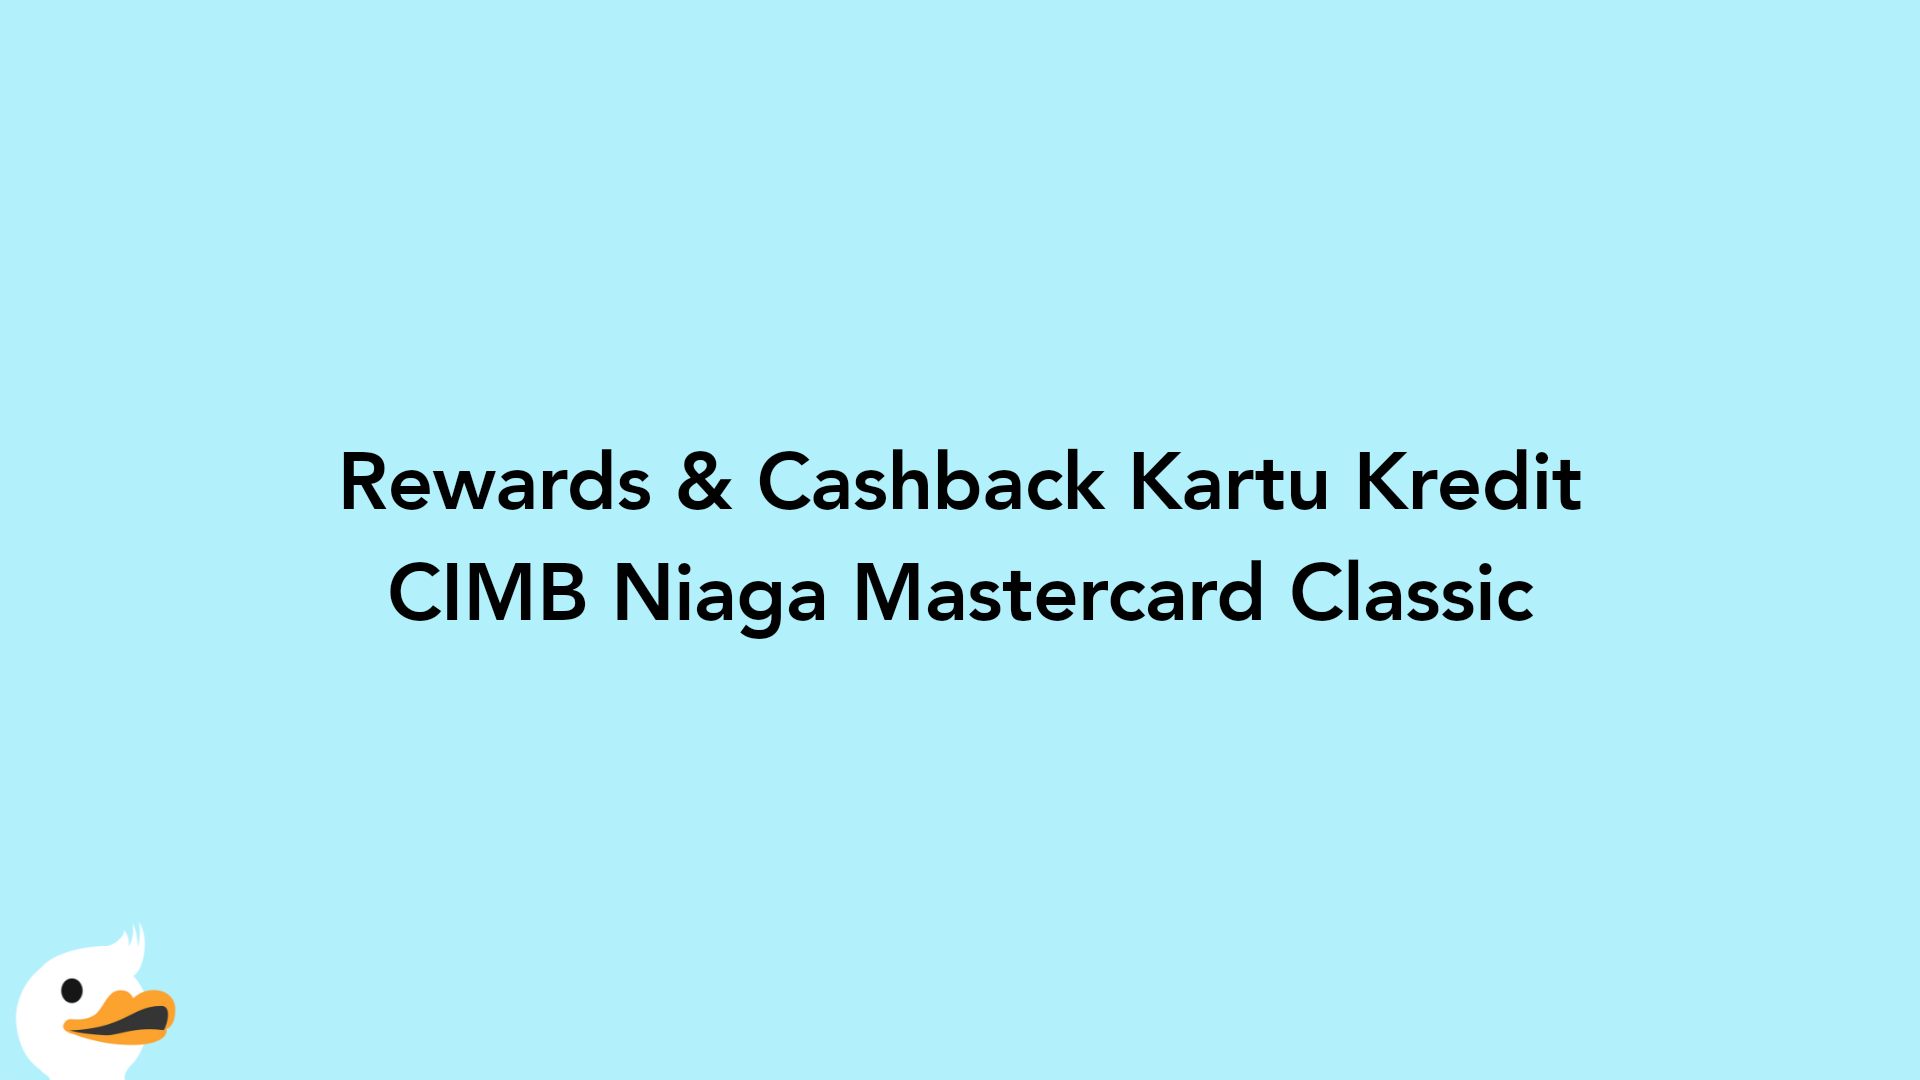 Rewards & Cashback Kartu Kredit CIMB Niaga Mastercard Classic